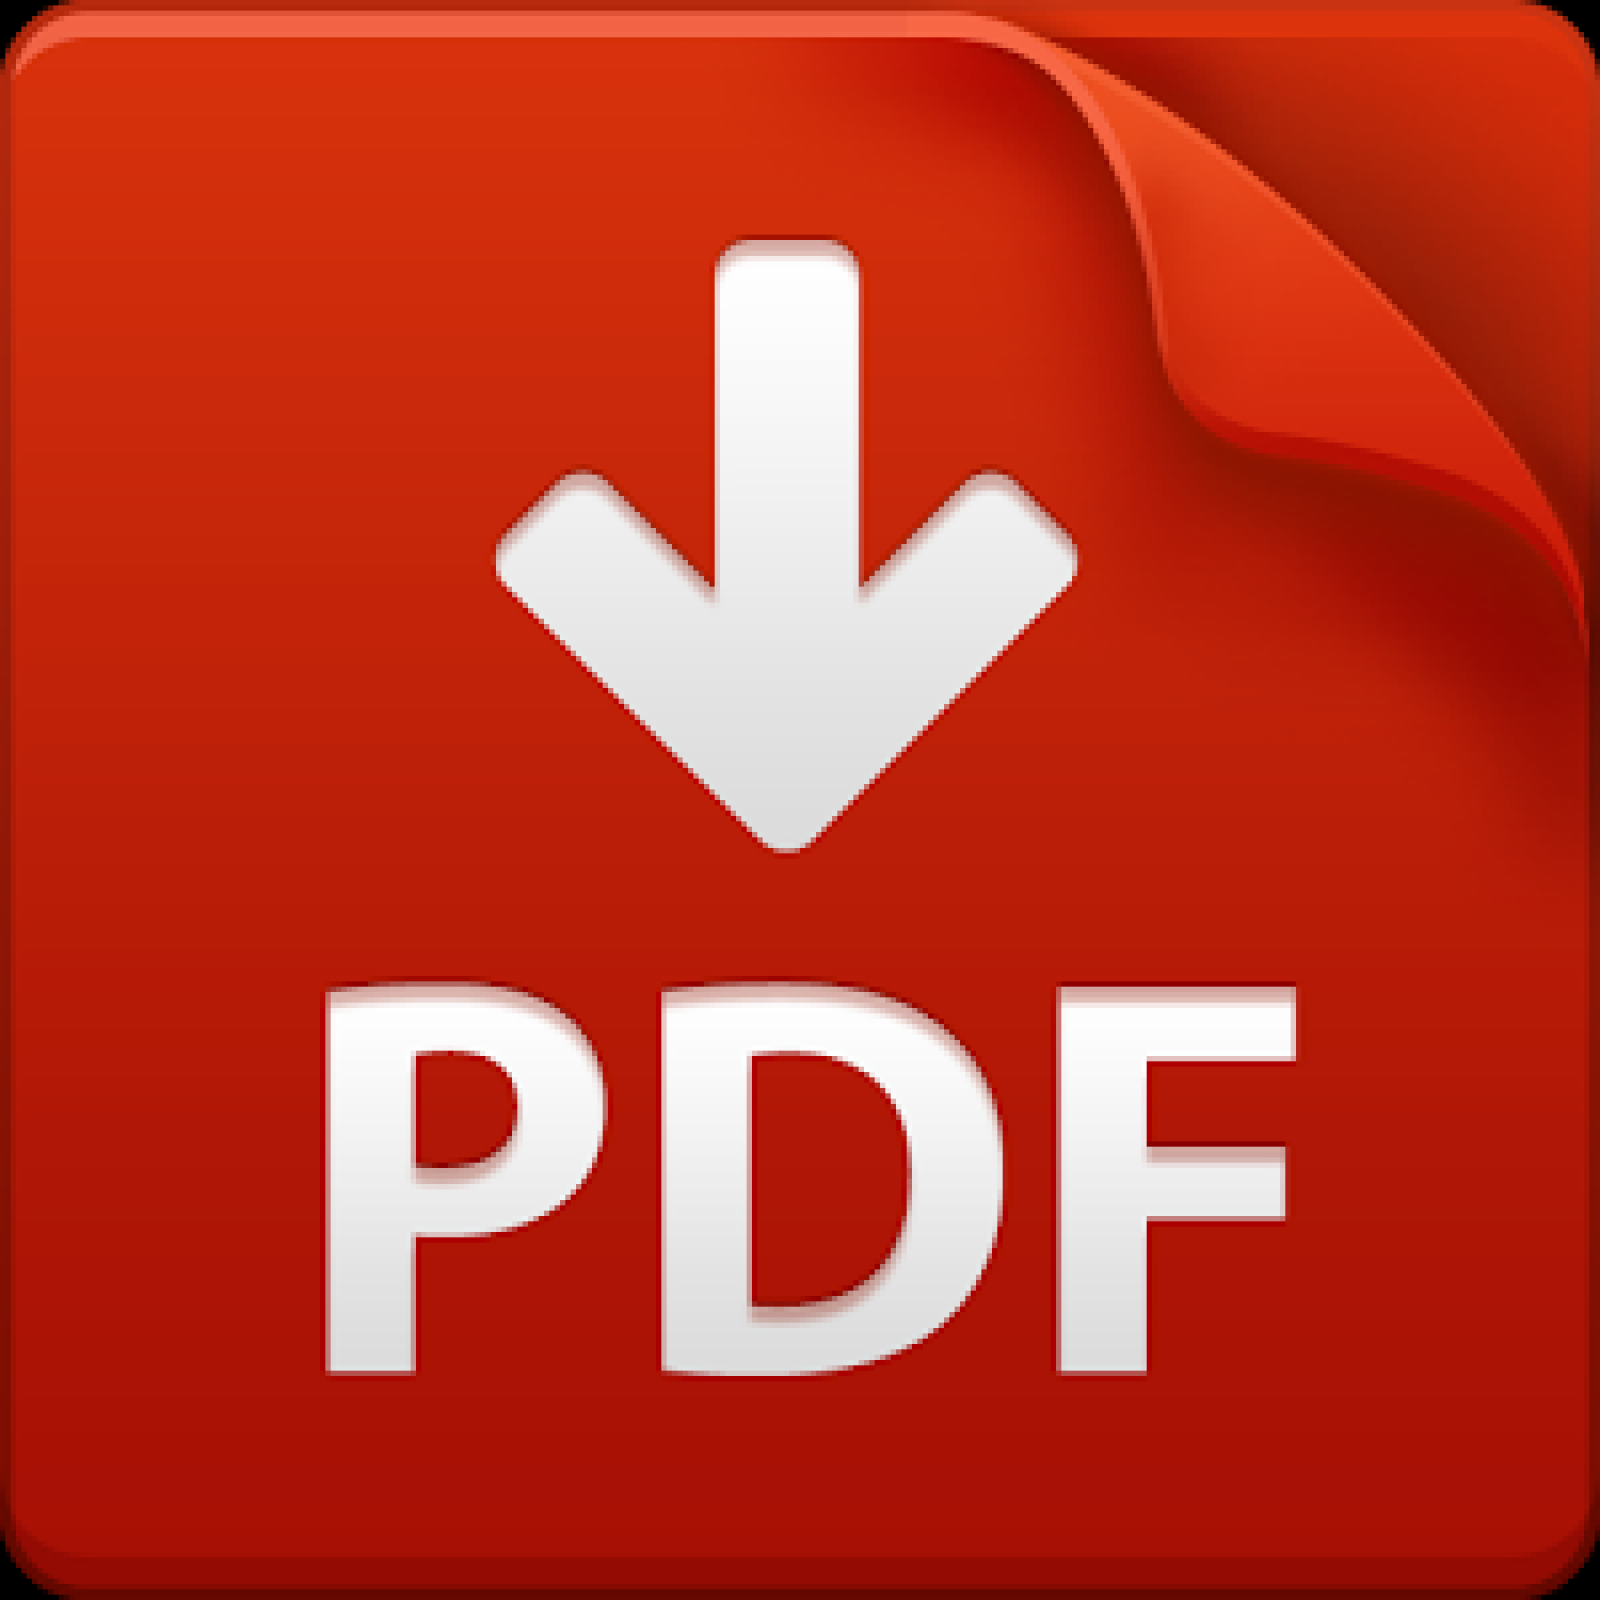 Pdf icon. Pdf файл. Иконка pdf. Значок pdf файла. Пиктограмма pdf.